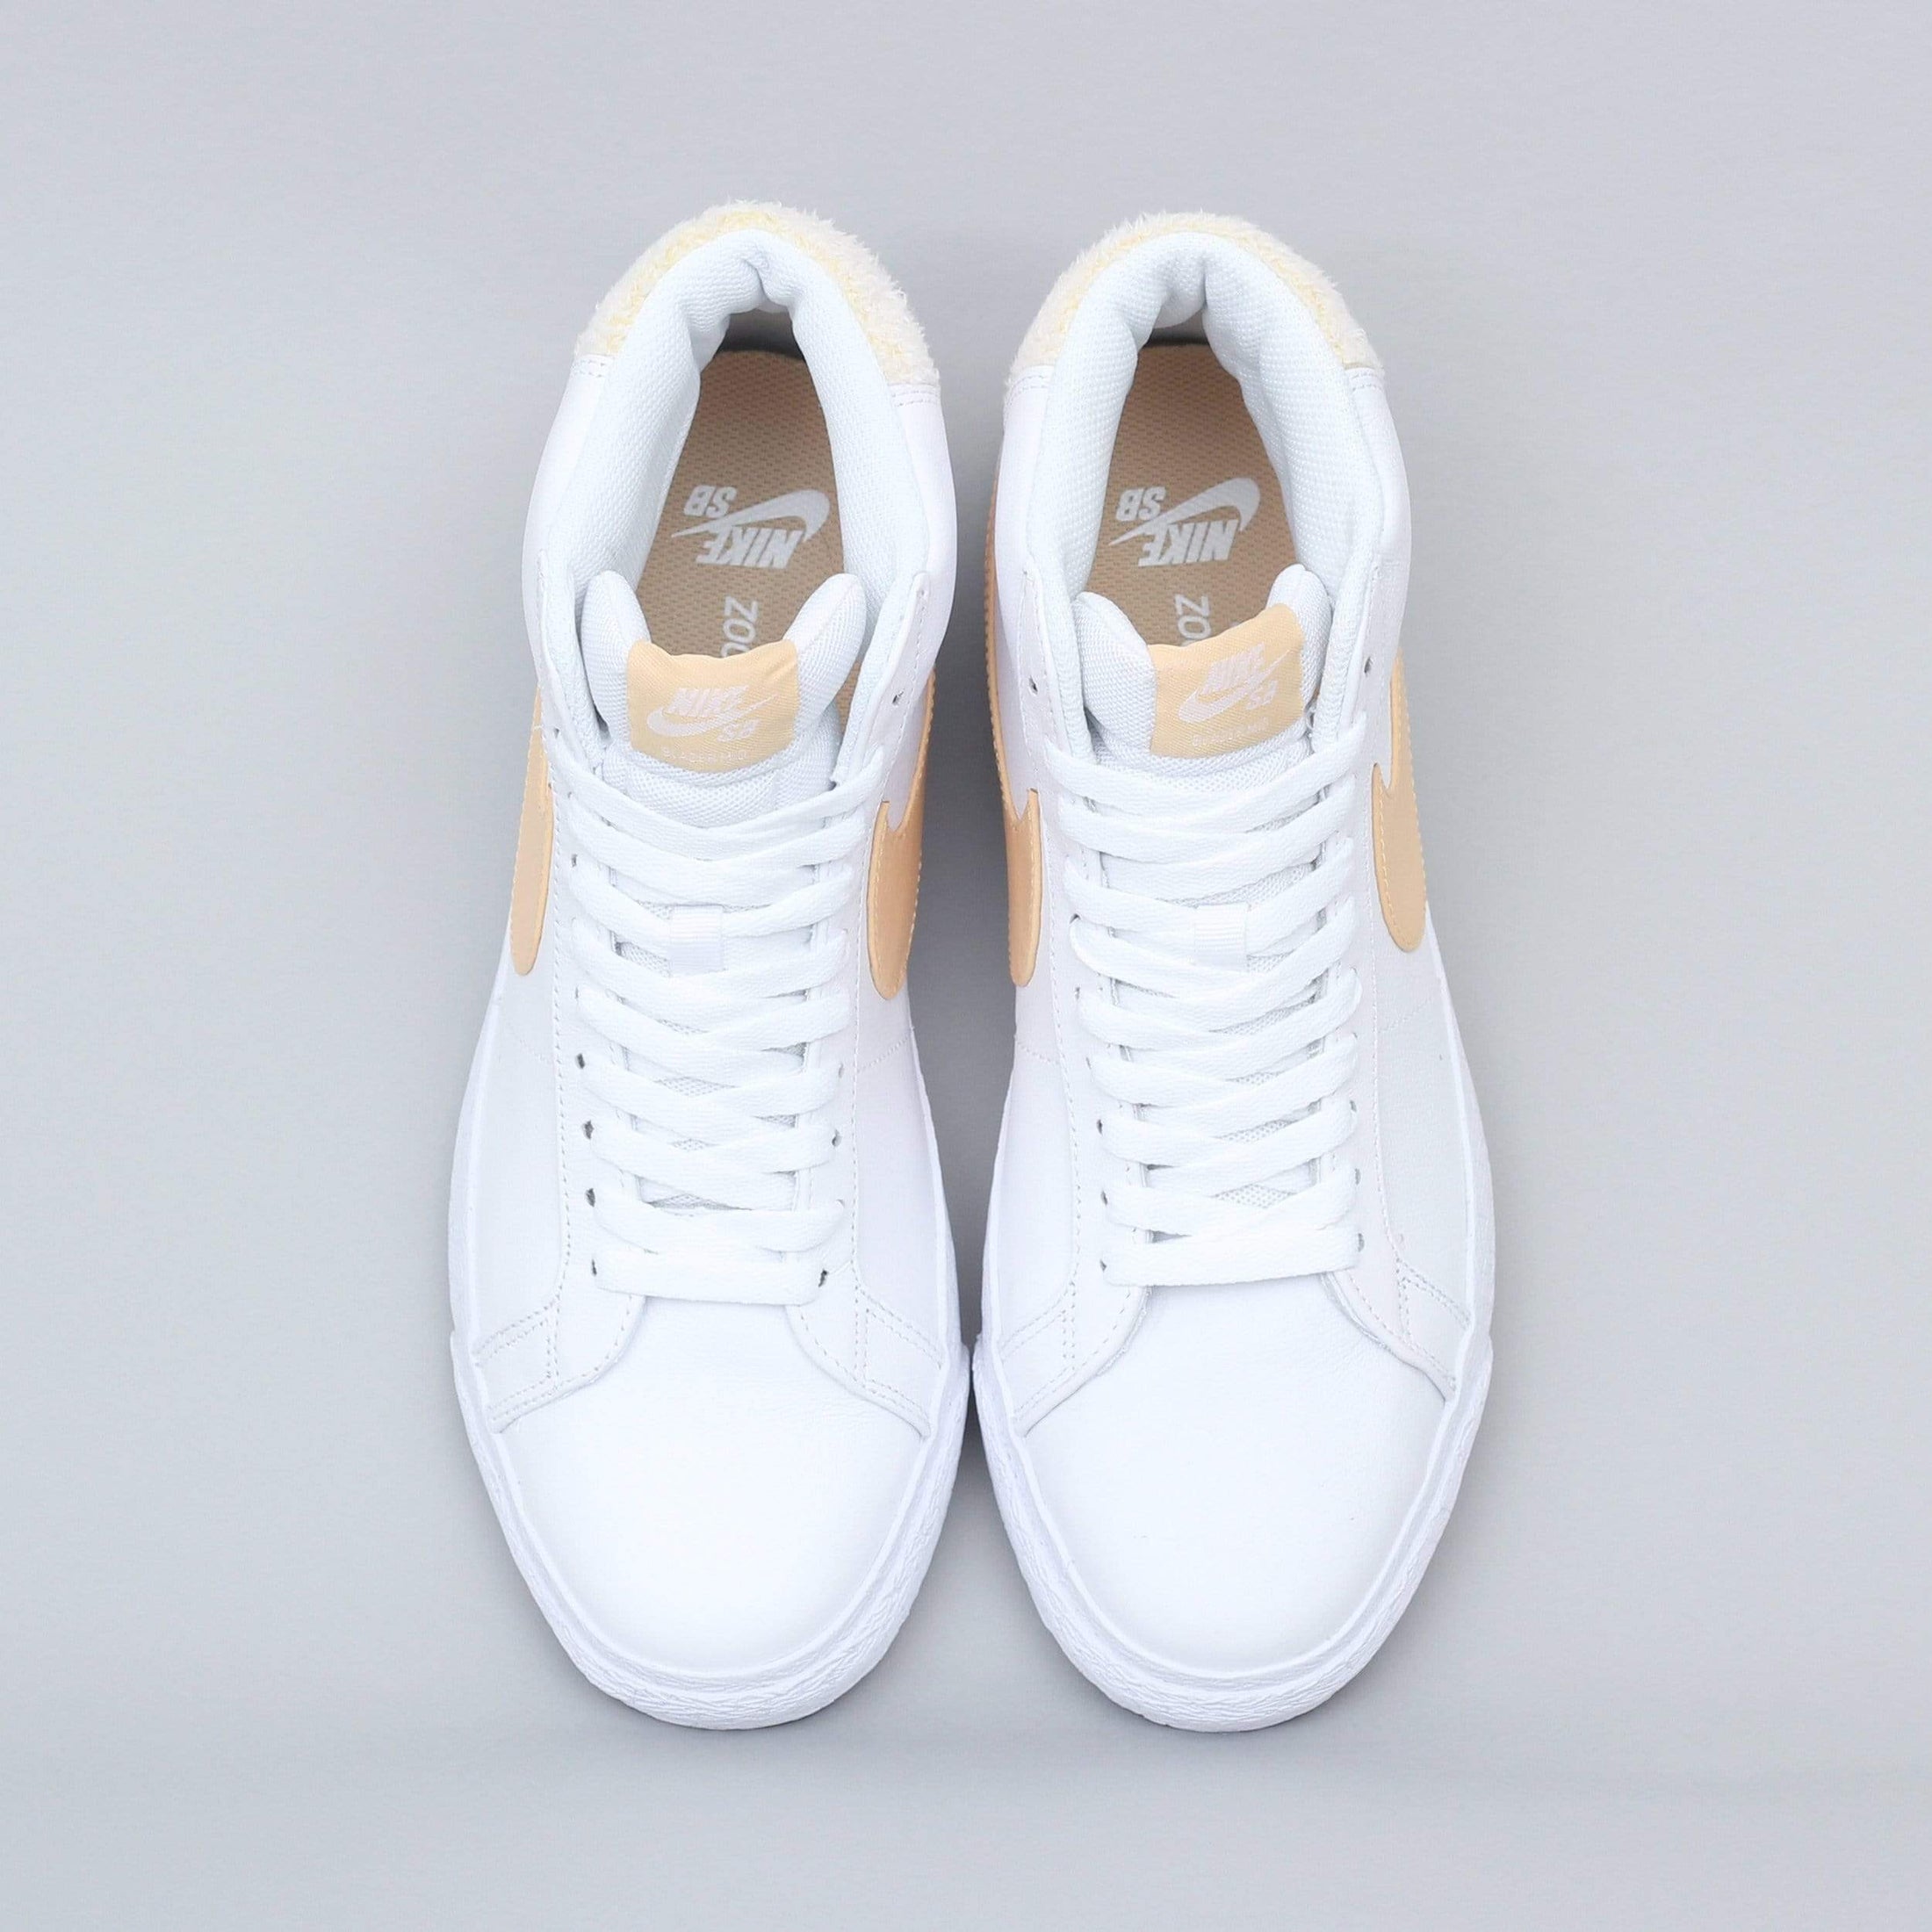 Nike SB Blazer Mid Premium Shoes White / Celestial Gold